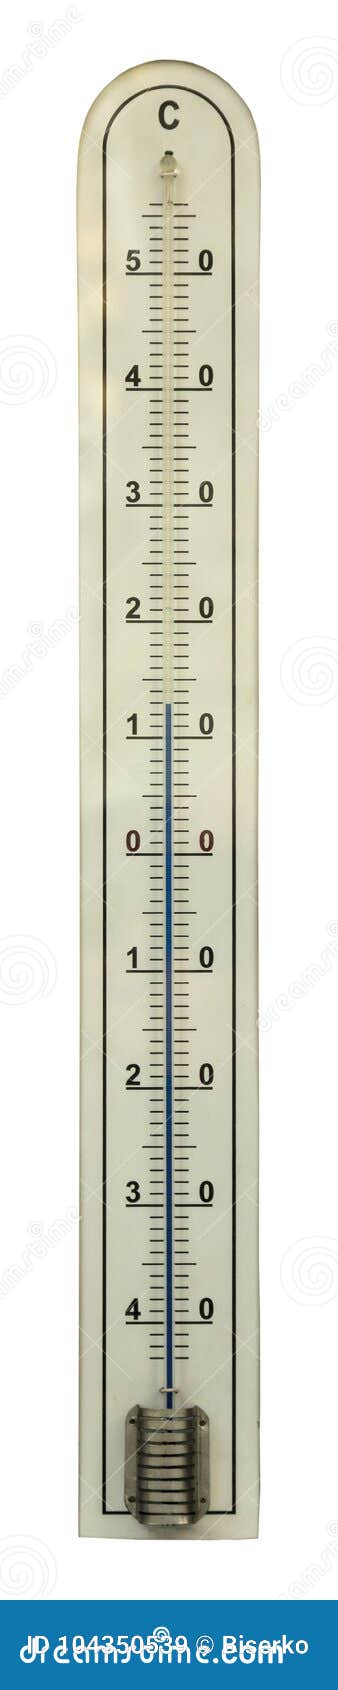 Mooi Trunk bibliotheek inzet Geïsoleerde Thermometer Met Kwik in De Glazen Buis Stock Afbeelding - Image  of duidelijk, elementen: 104350539